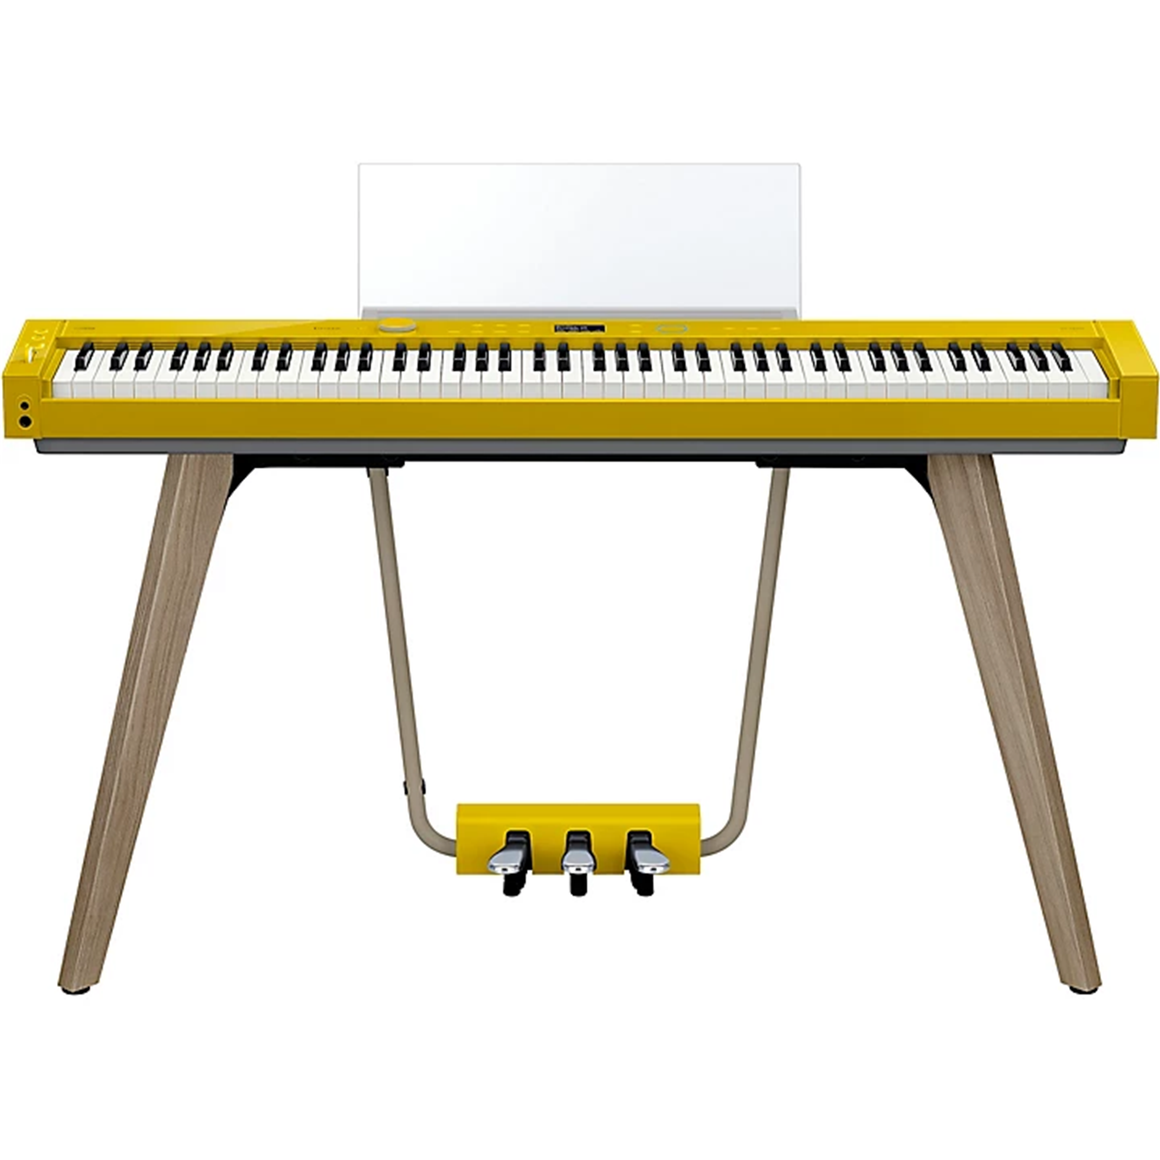 CASIO PXS7000HMC3 Privia Premium 88 Key Digital Piano (Harmonious Mustard)